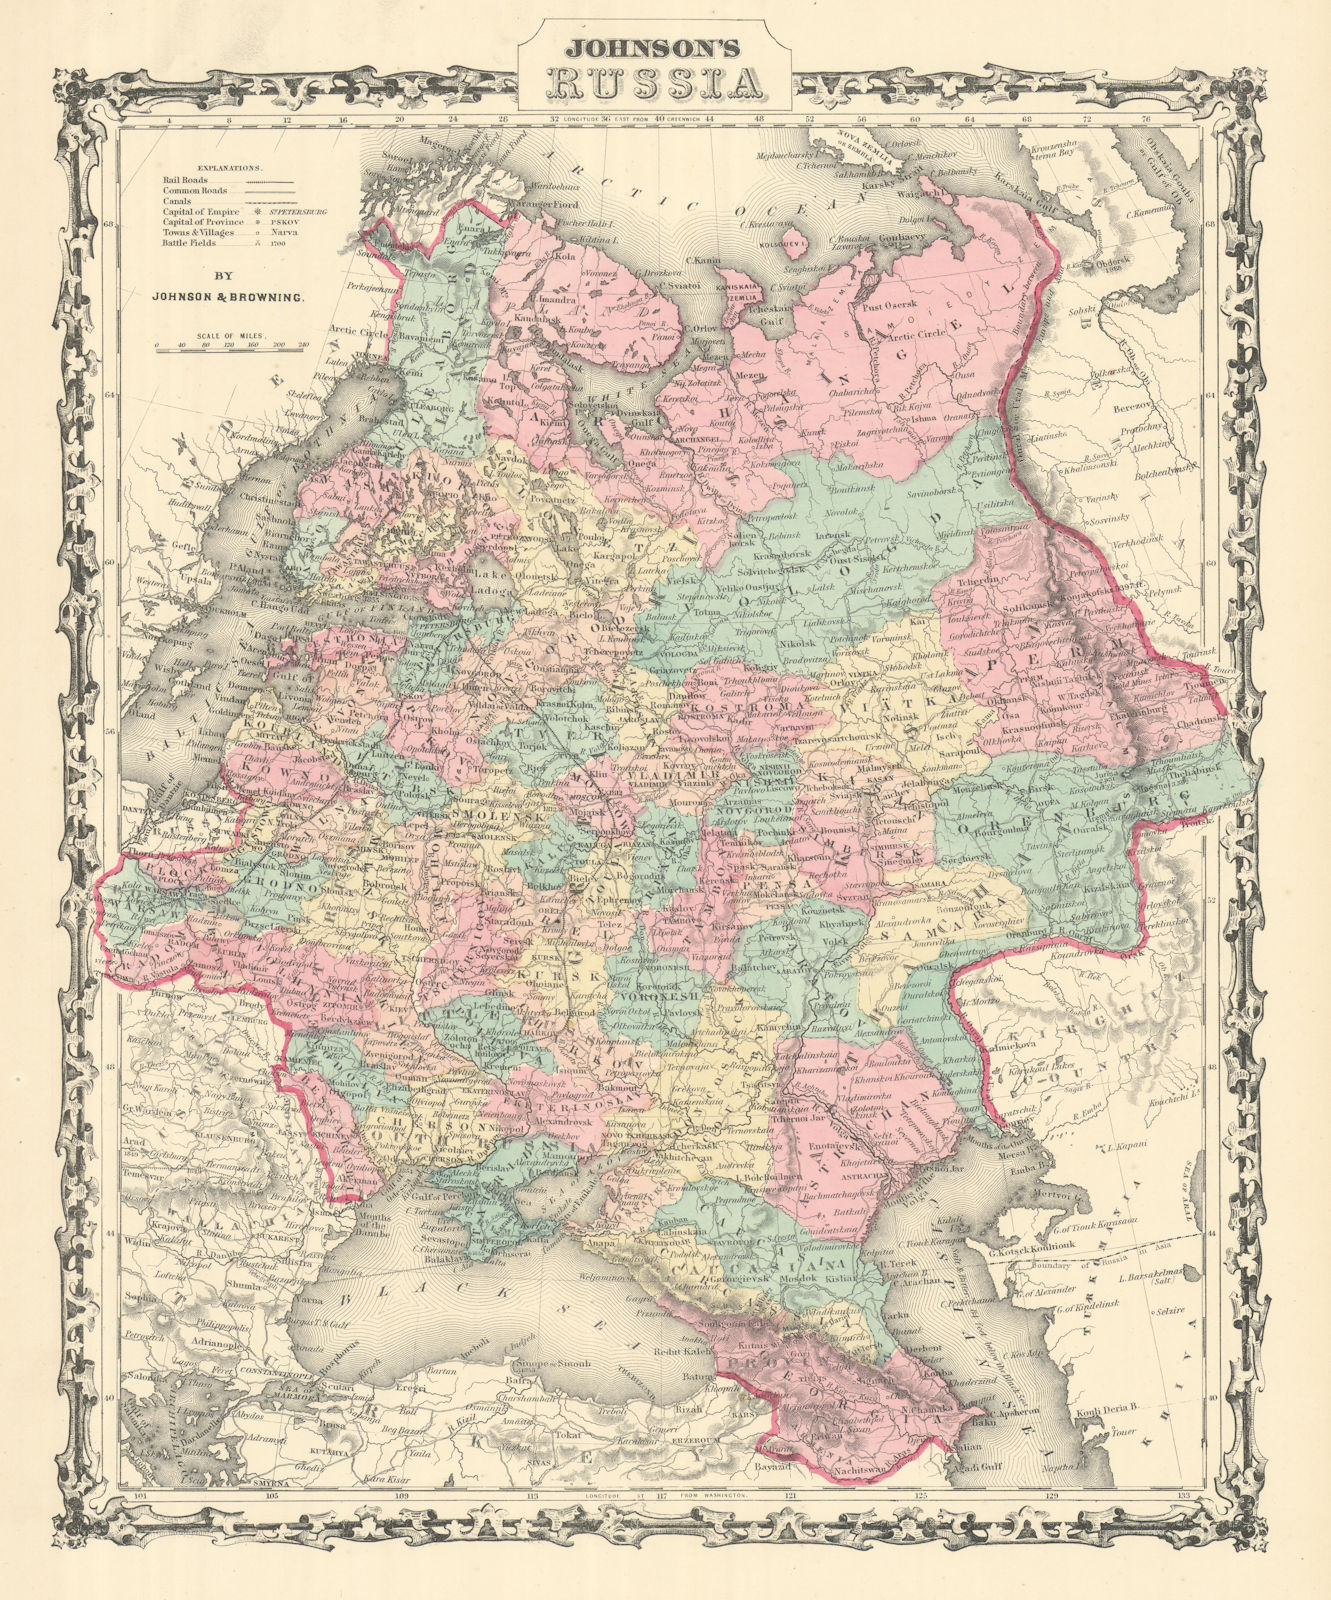 Associate Product Johnson's Russia in Europe. Ukraine Poland Baltics Finland Caucasus 1861 map